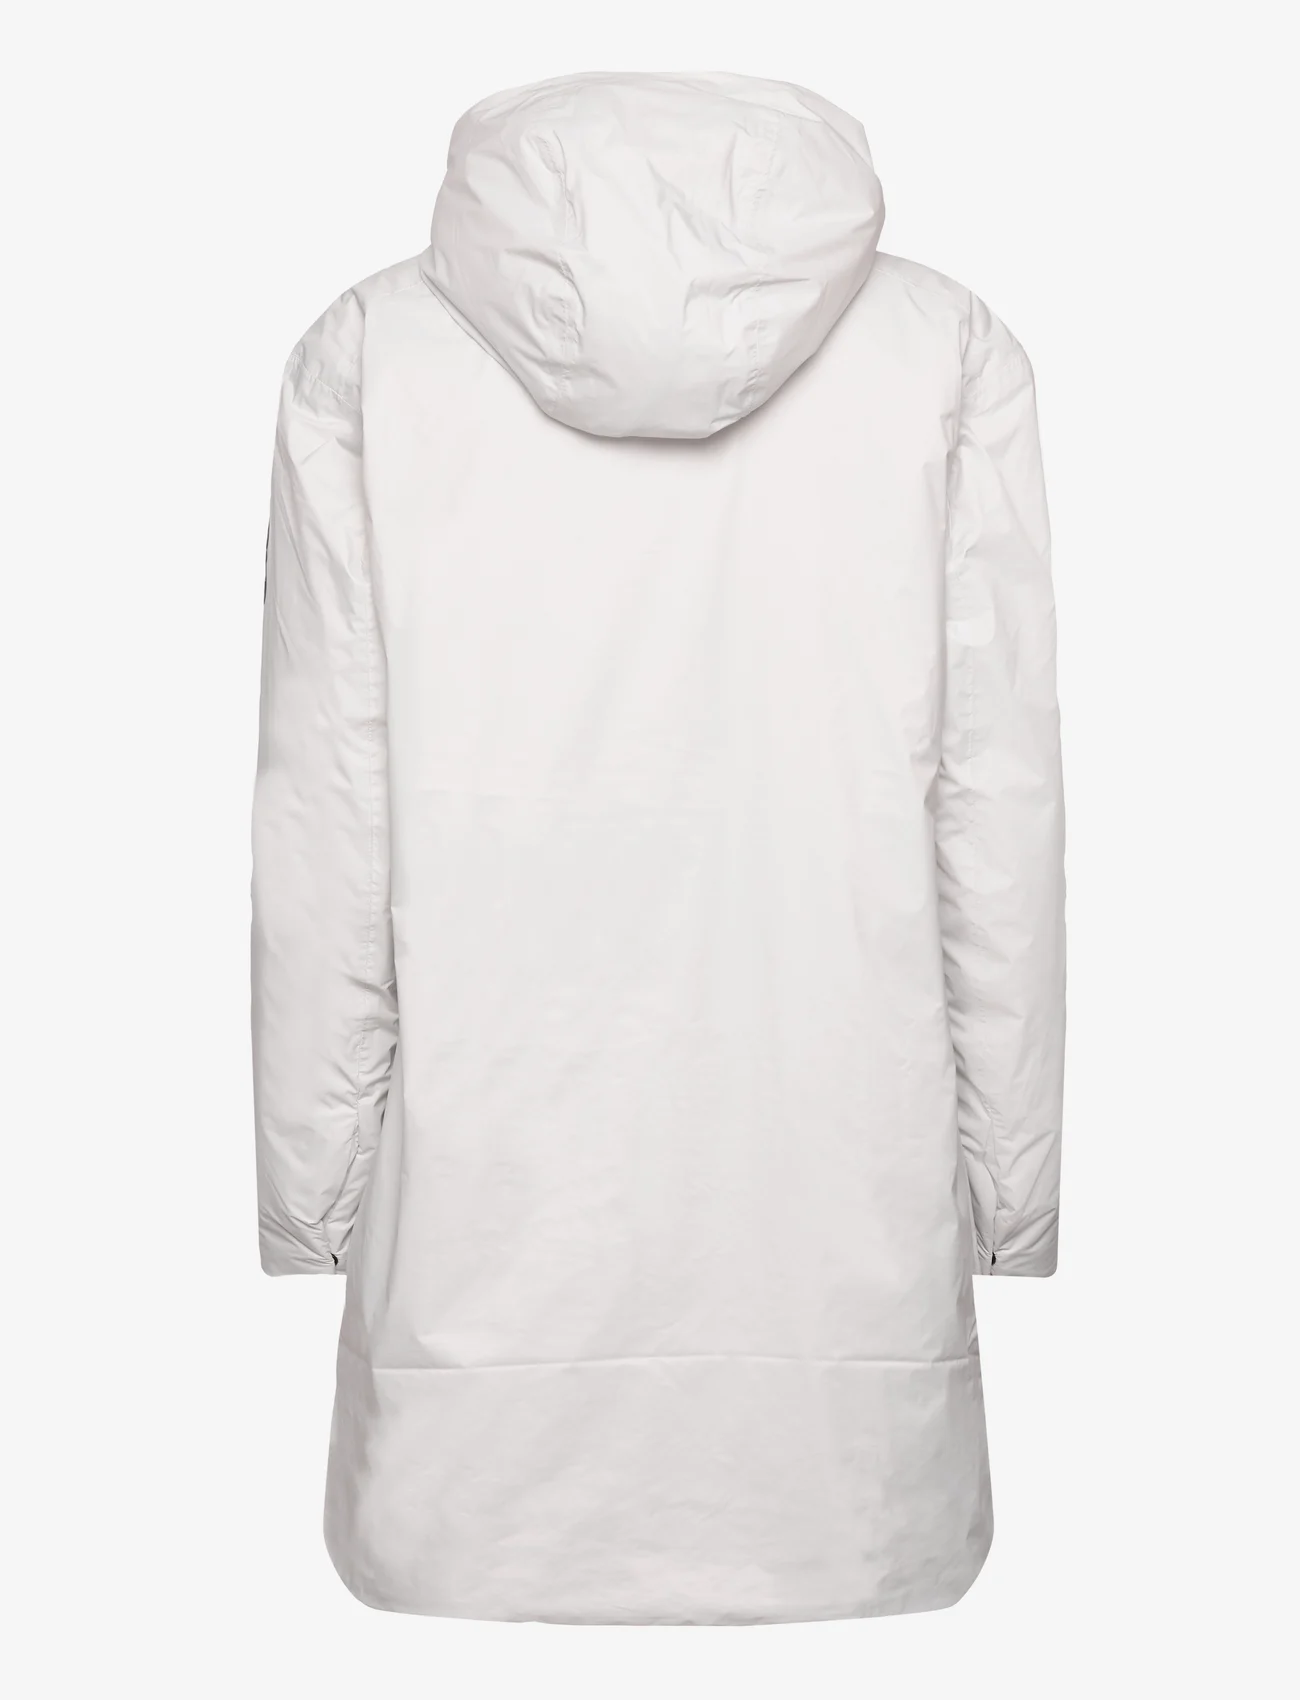 Tenson - Transition Coat Woman - allværsjakker & regnjakker - light grey - 1